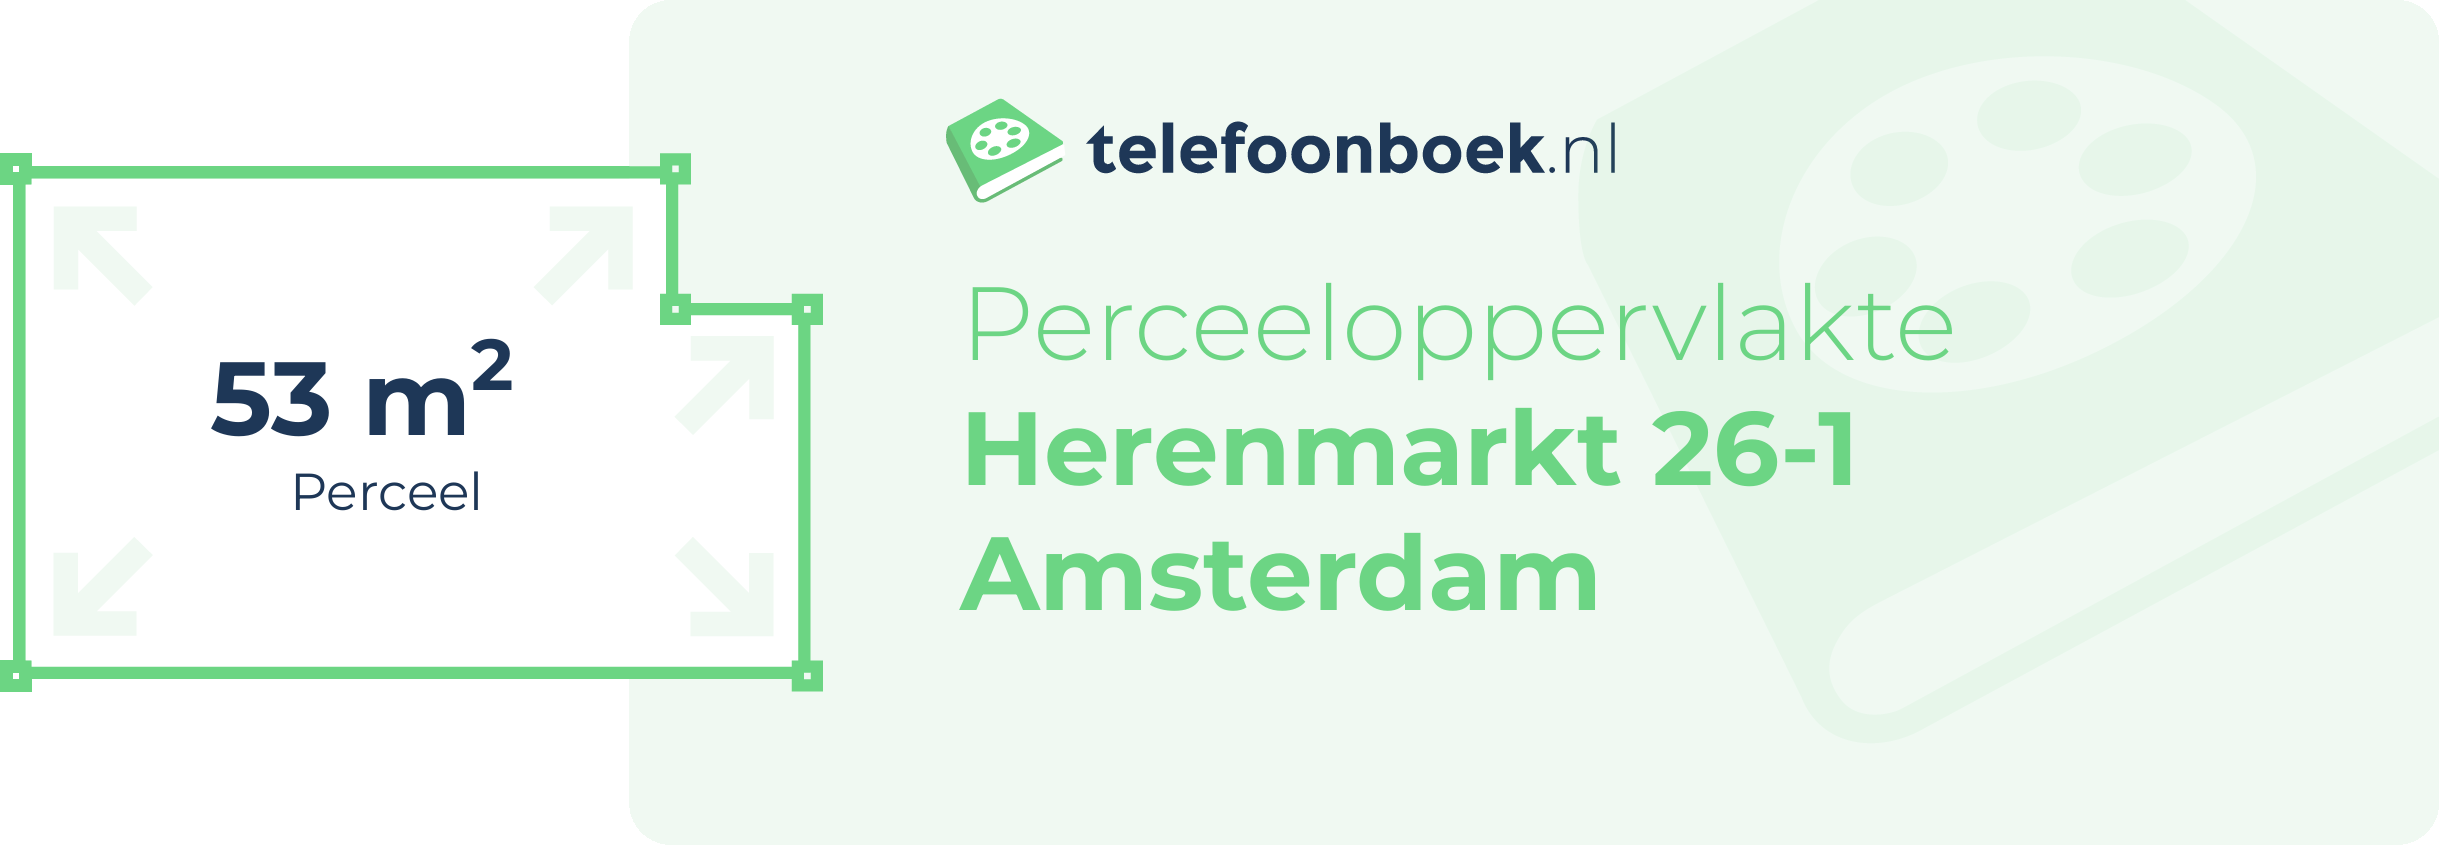 Perceeloppervlakte Herenmarkt 26-1 Amsterdam